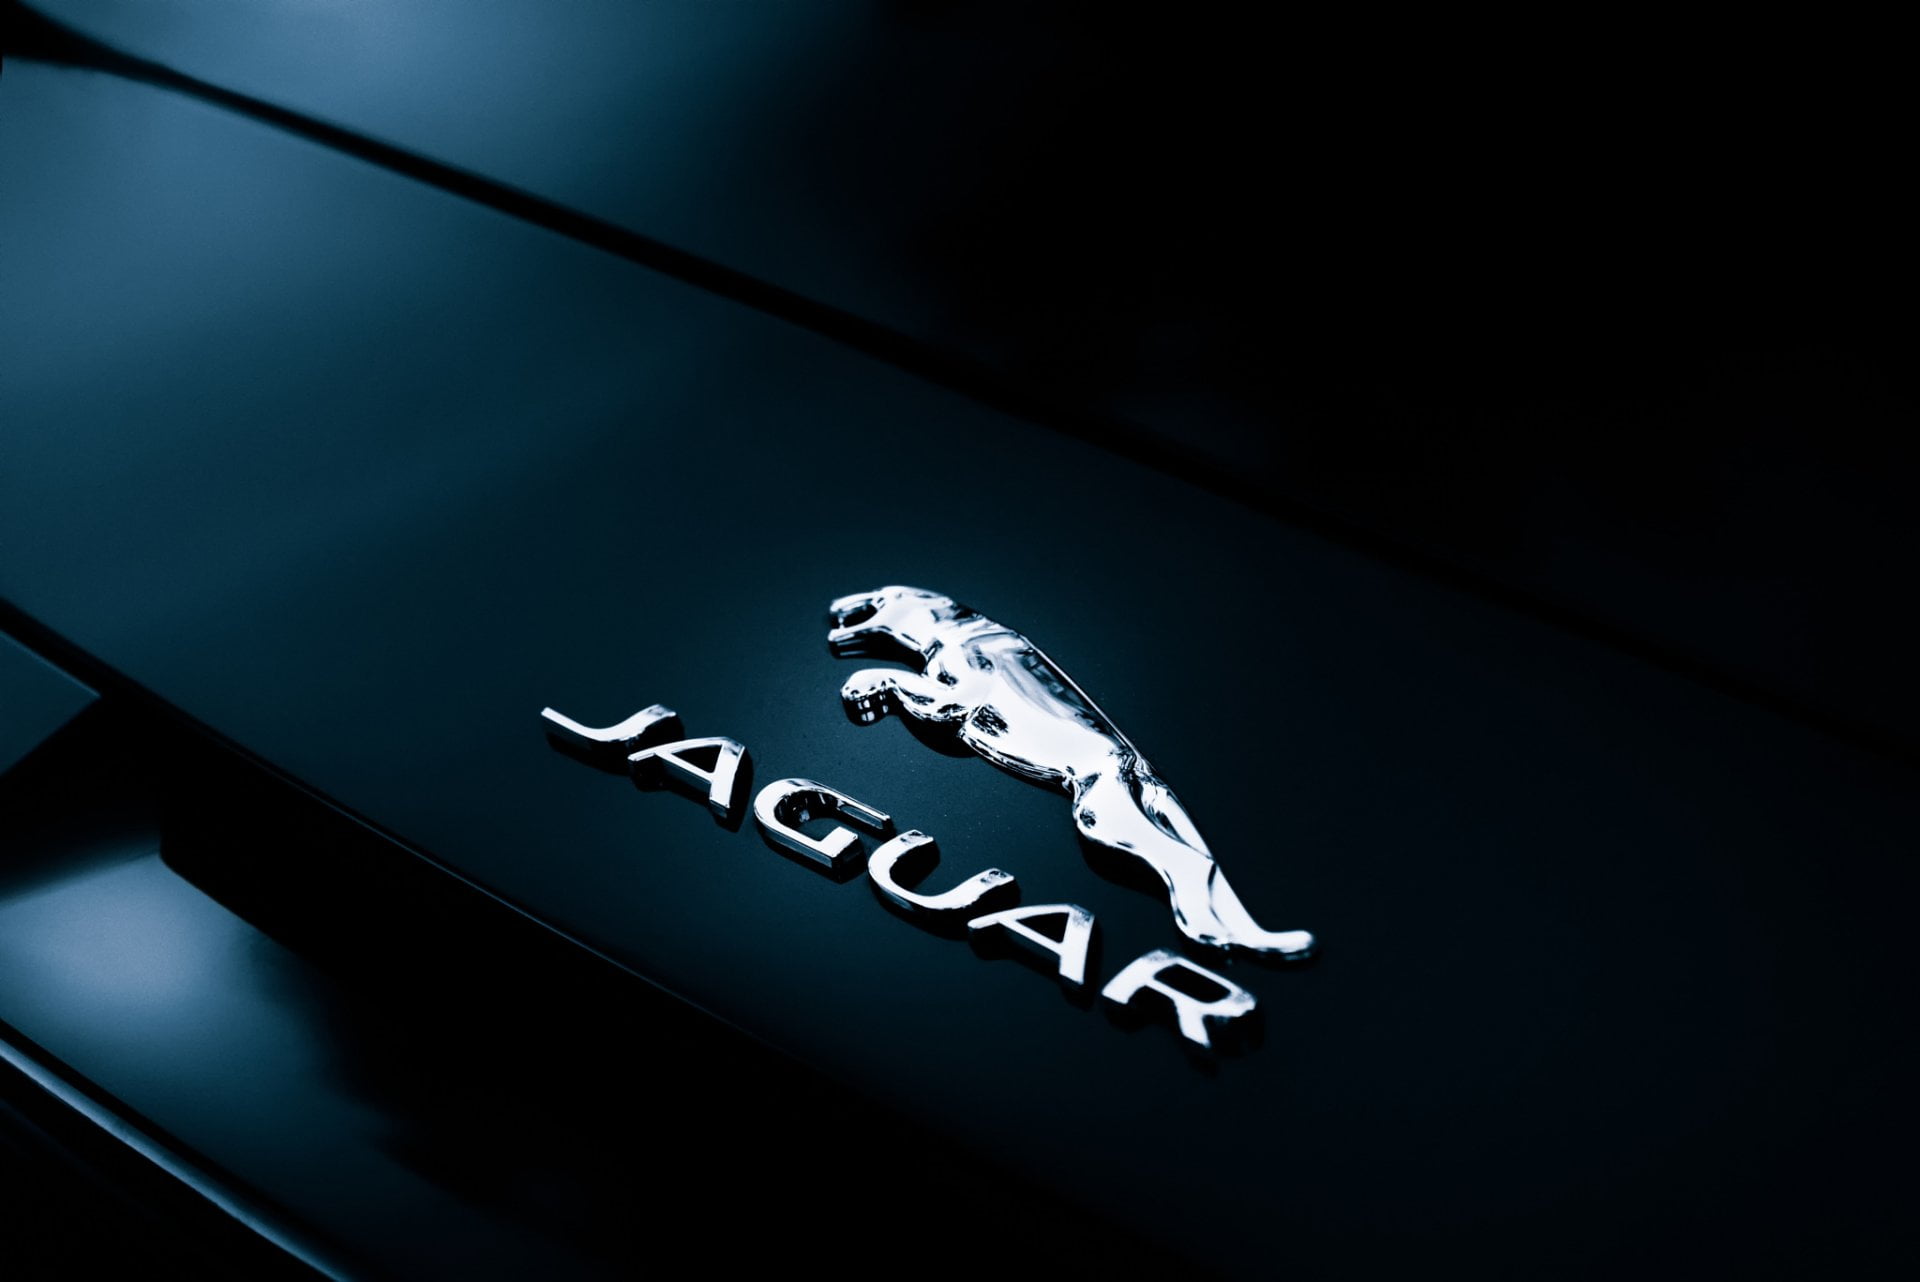 Jaguar hará su plataforma de autos eléctricos de ultra lujo